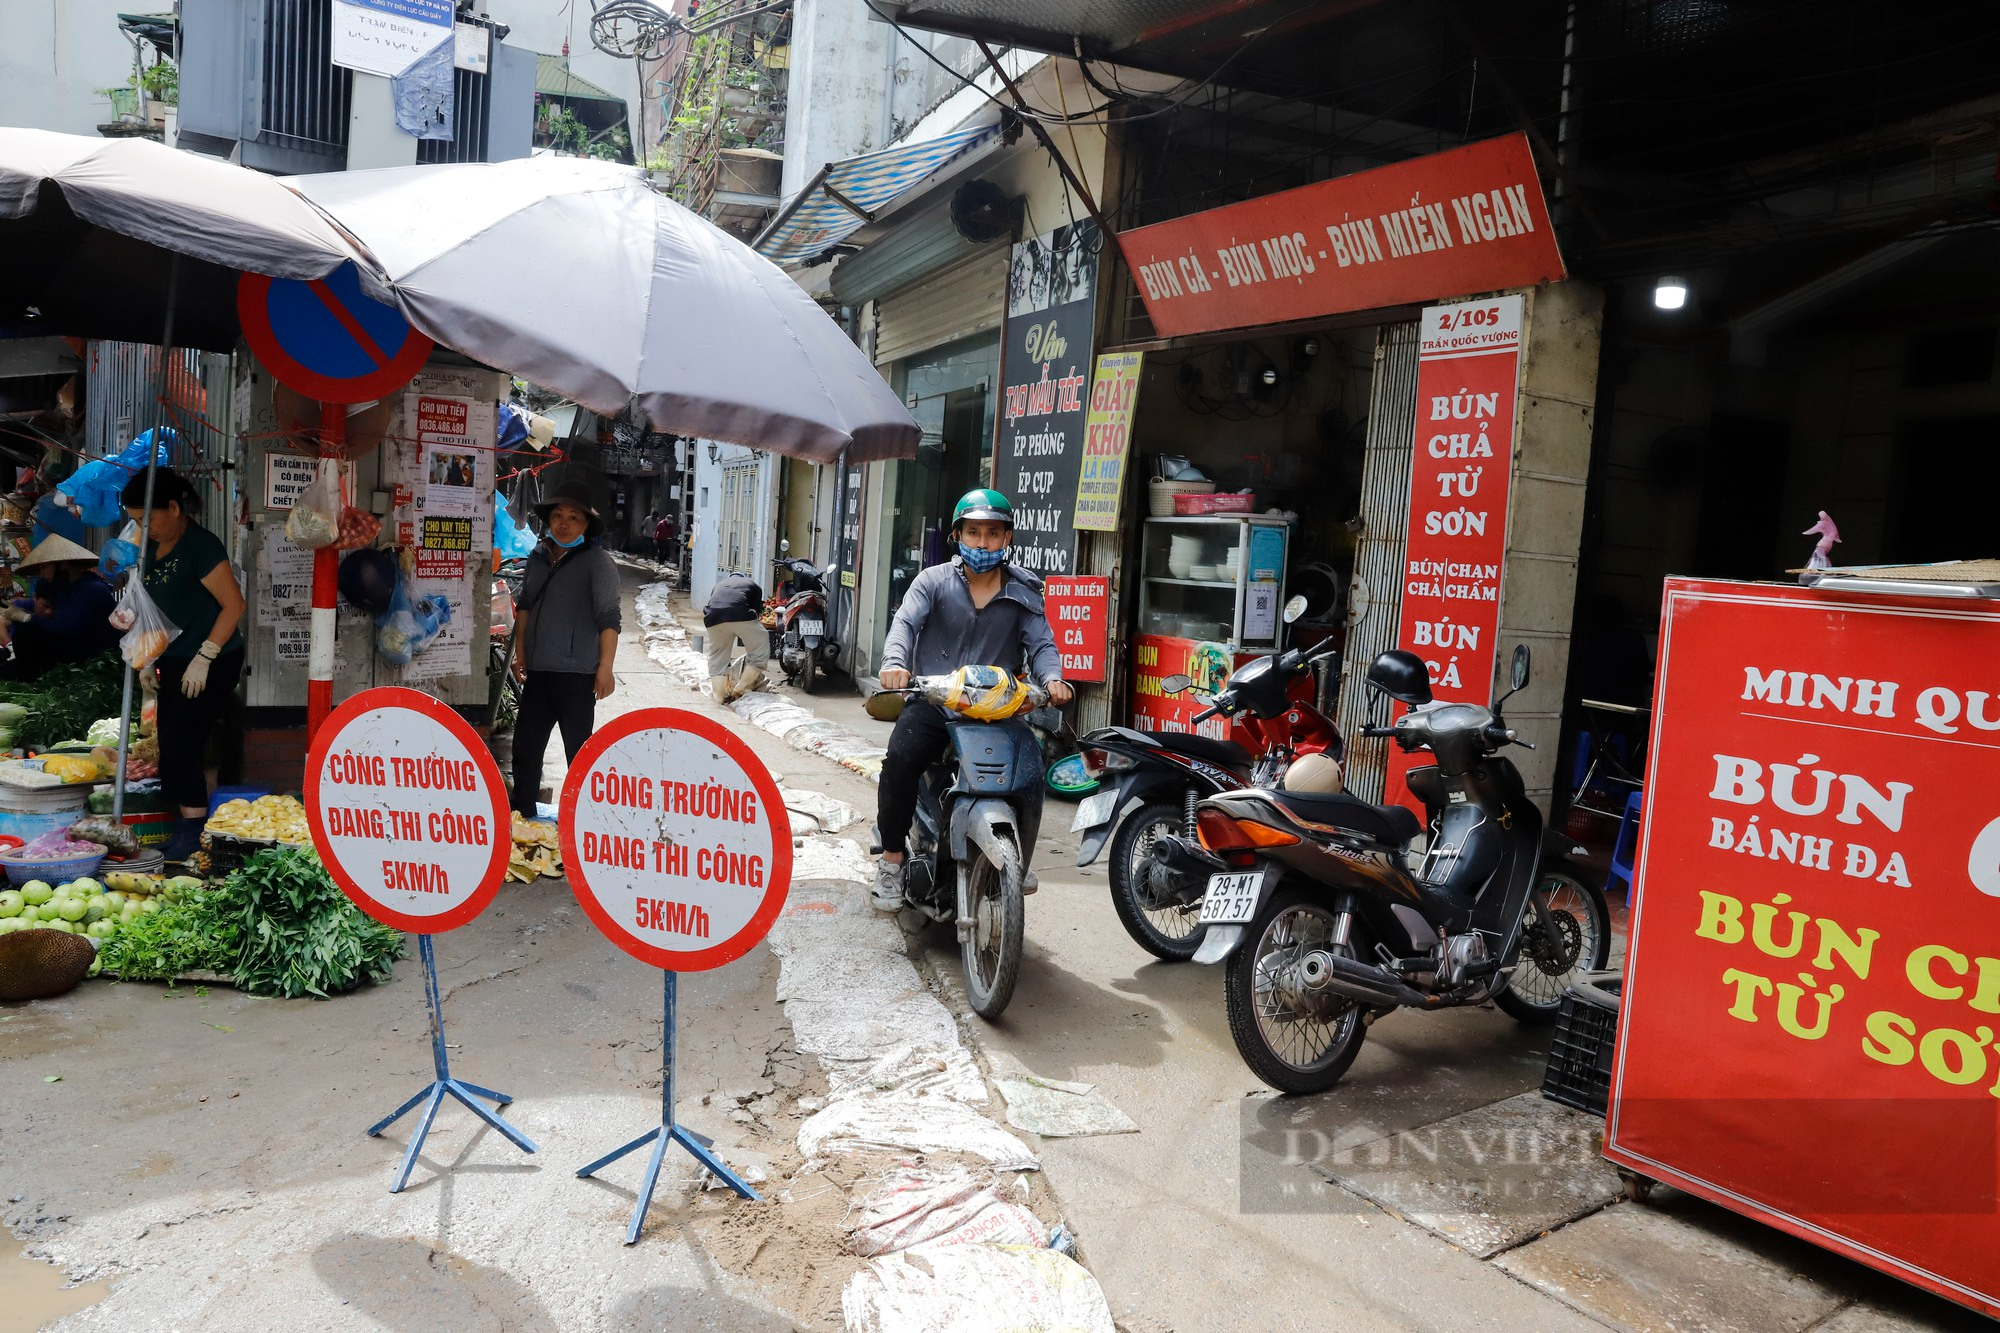 Đoạn đường dài 500m tại Hà Nội bị băm nát, chi chít những &quot;vết sẹo&quot; như bẫy người đi đường - Ảnh 13.